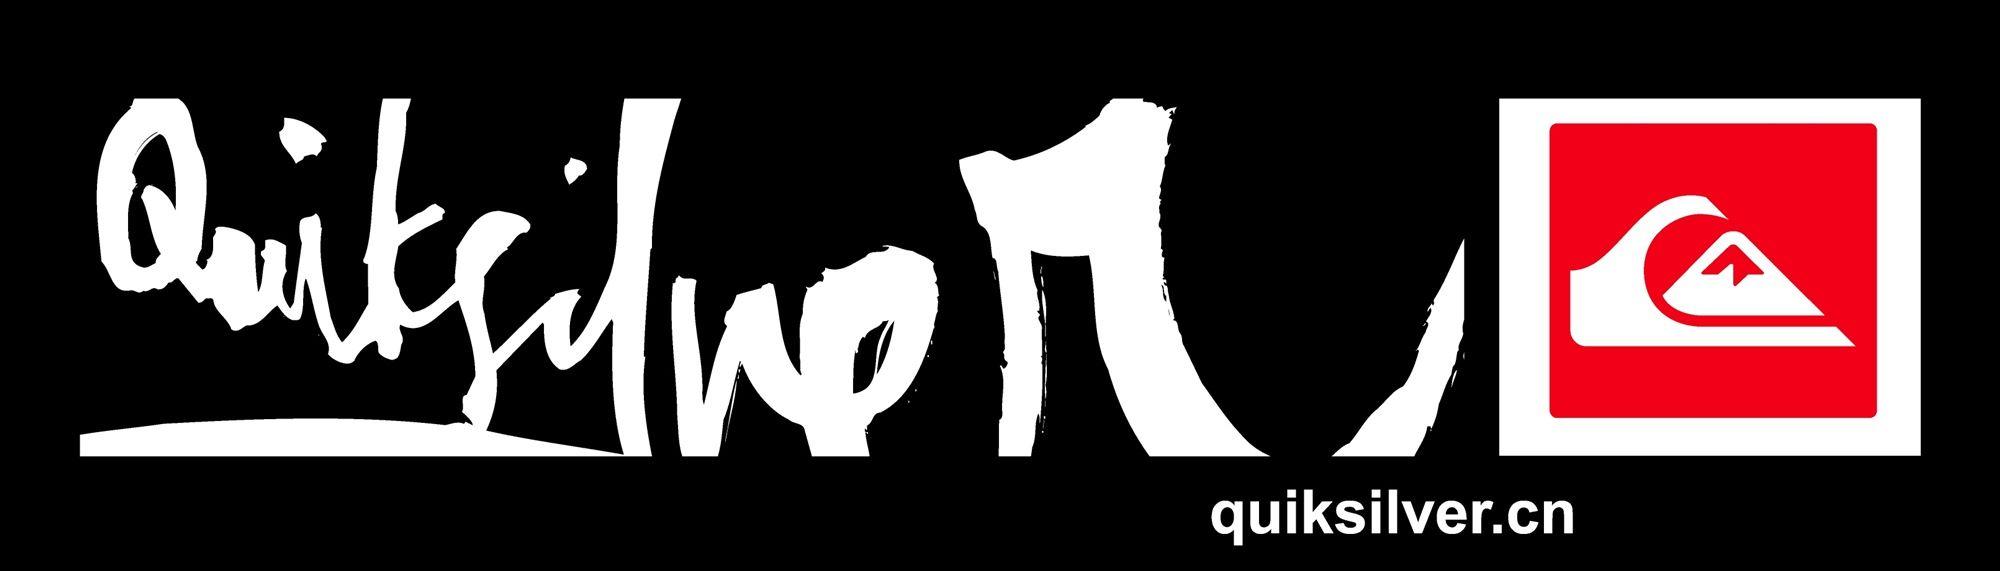 Quiksilver Logo Vector Free Wallpapers